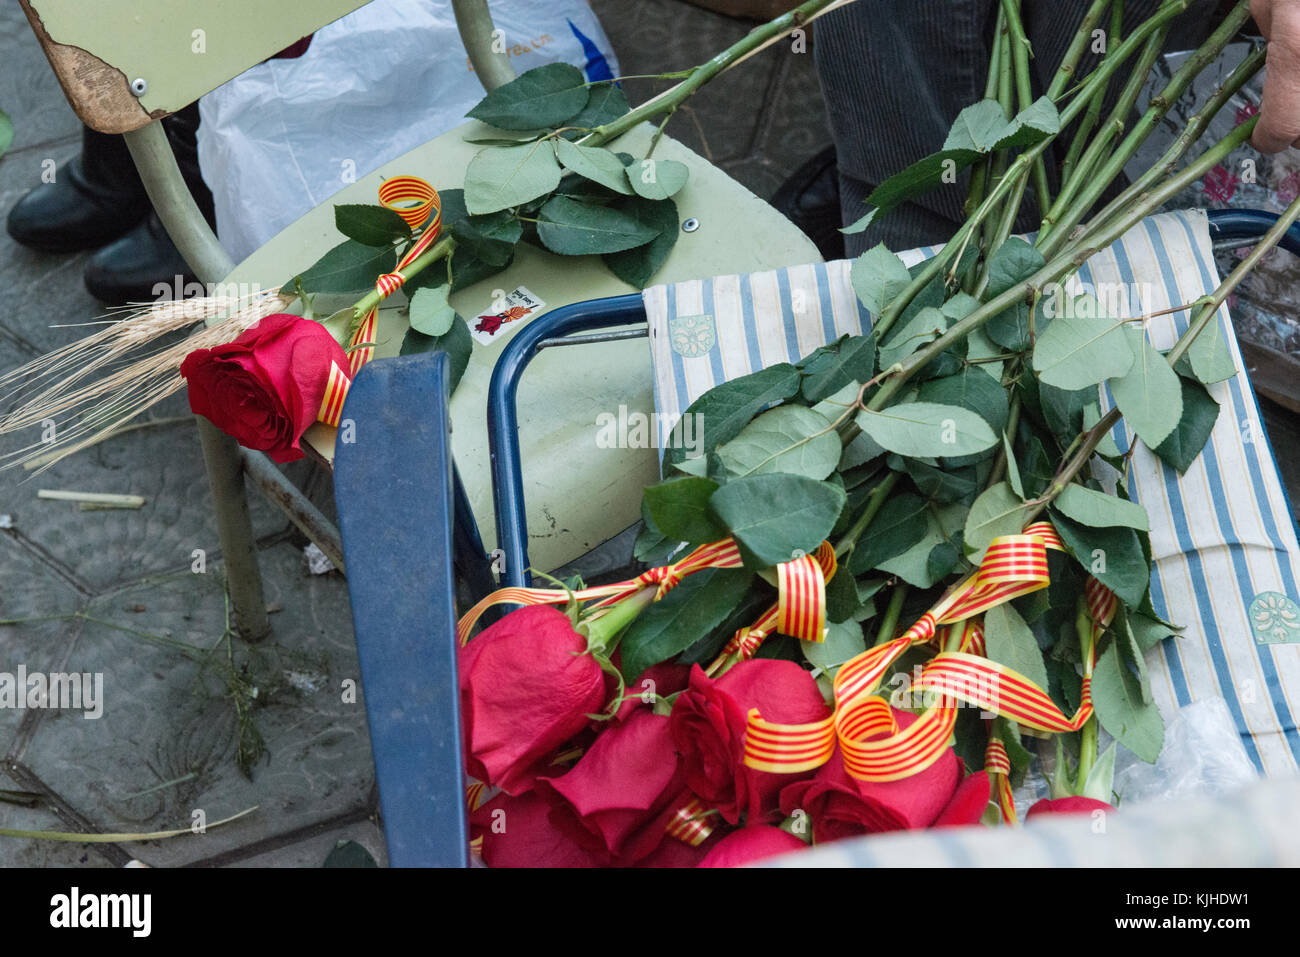 Un bouquet de roses rouges avec des rubans drapeau catalan reste sur la chaise d'un décrochage fleuriste prêt à être vendu pendant les fêtes de Sant Jordi à Barcelone. je Banque D'Images